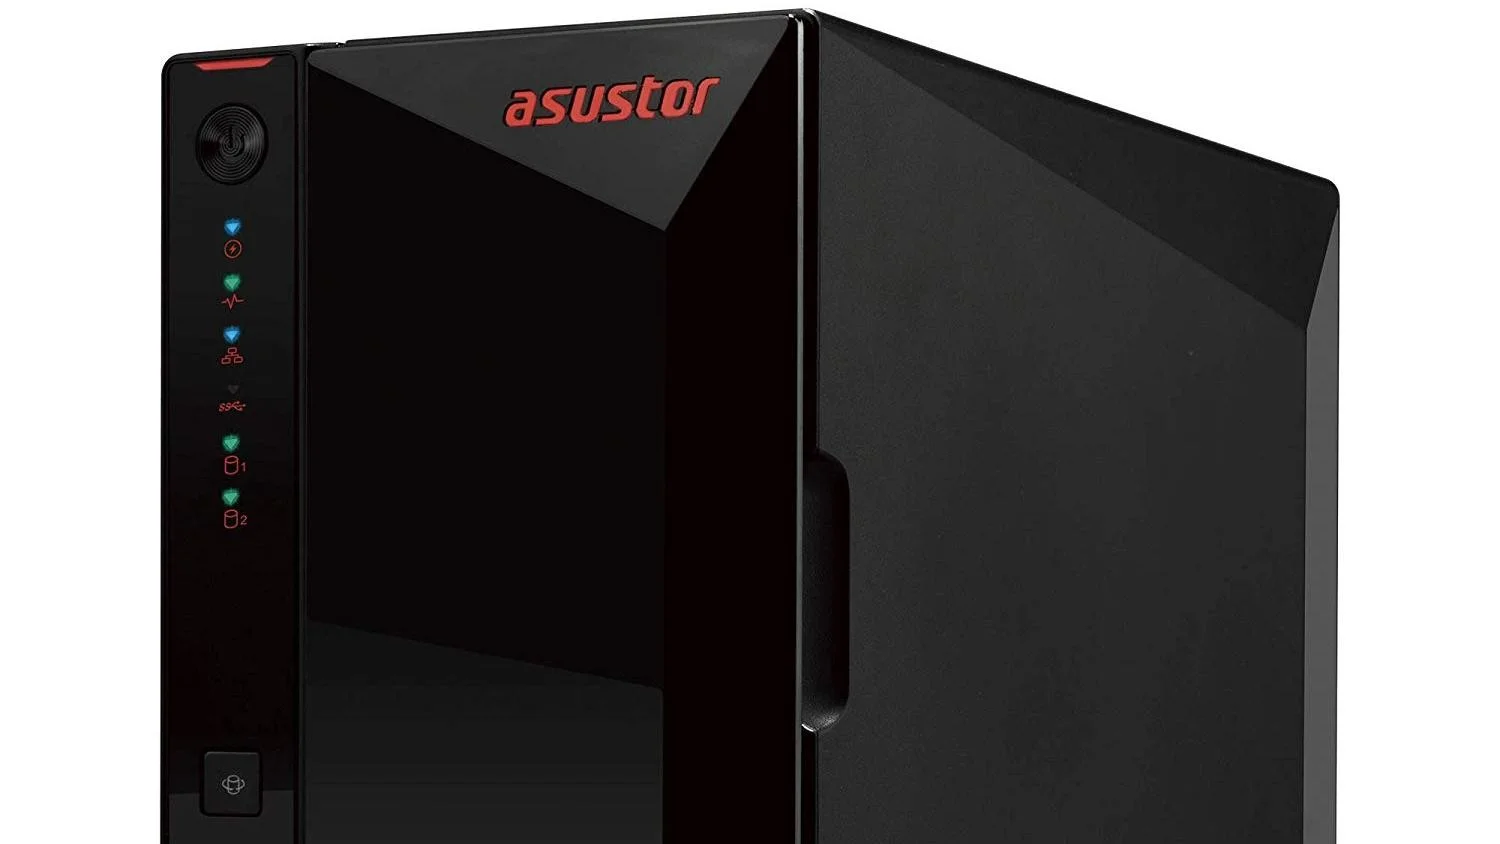 Супер NAS для дома. Asustor Nimbustor 2 AS5202T — 5 Гбит/с для хранения данных - изображение обложка